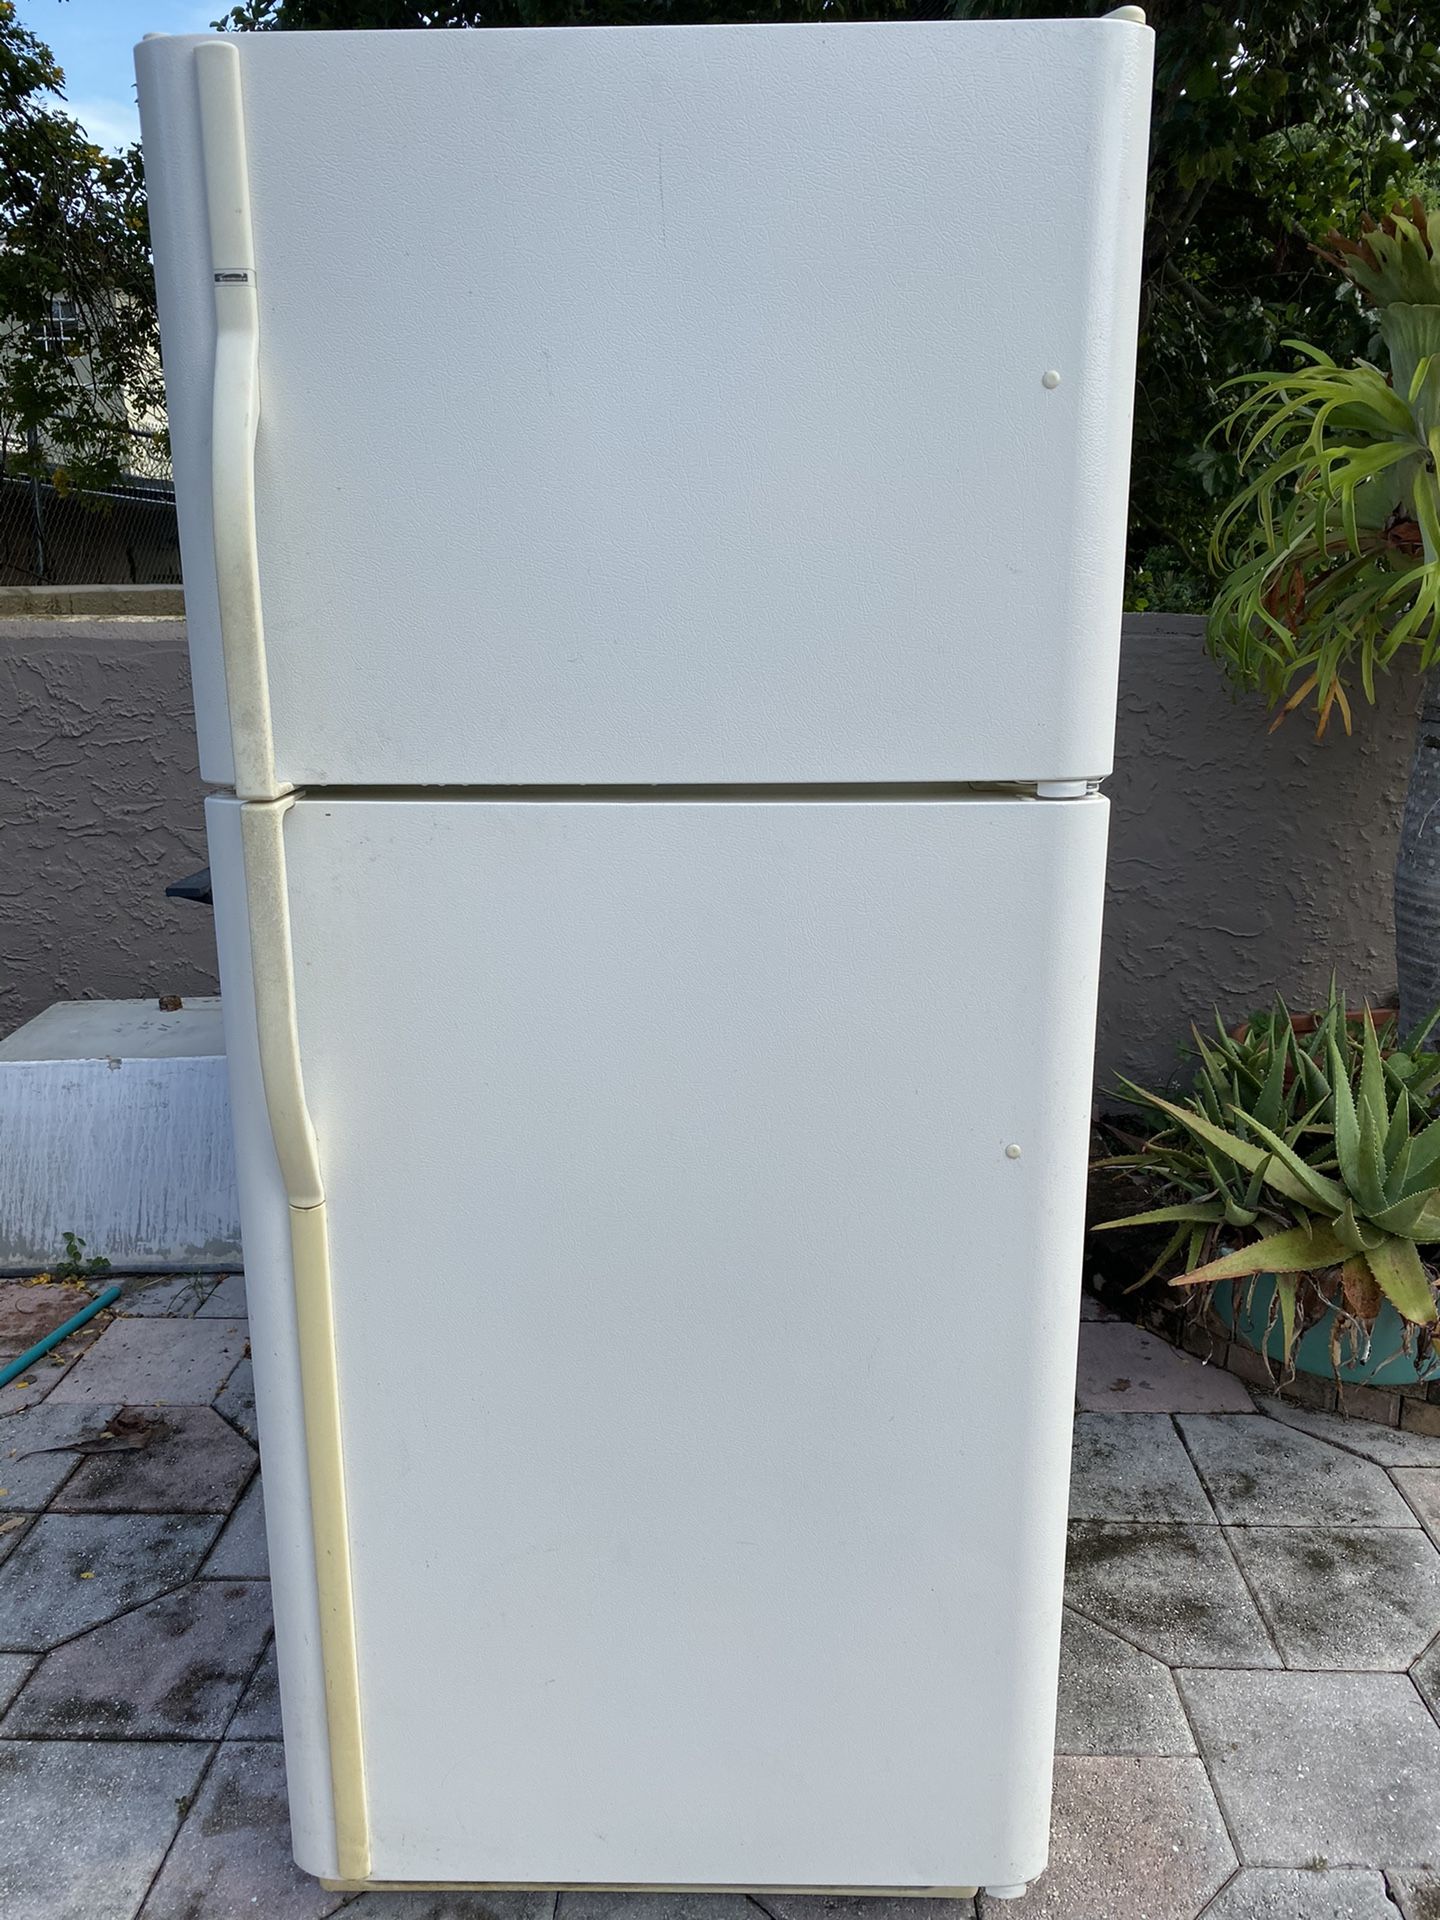 Kenmore 30 inch refrigerator